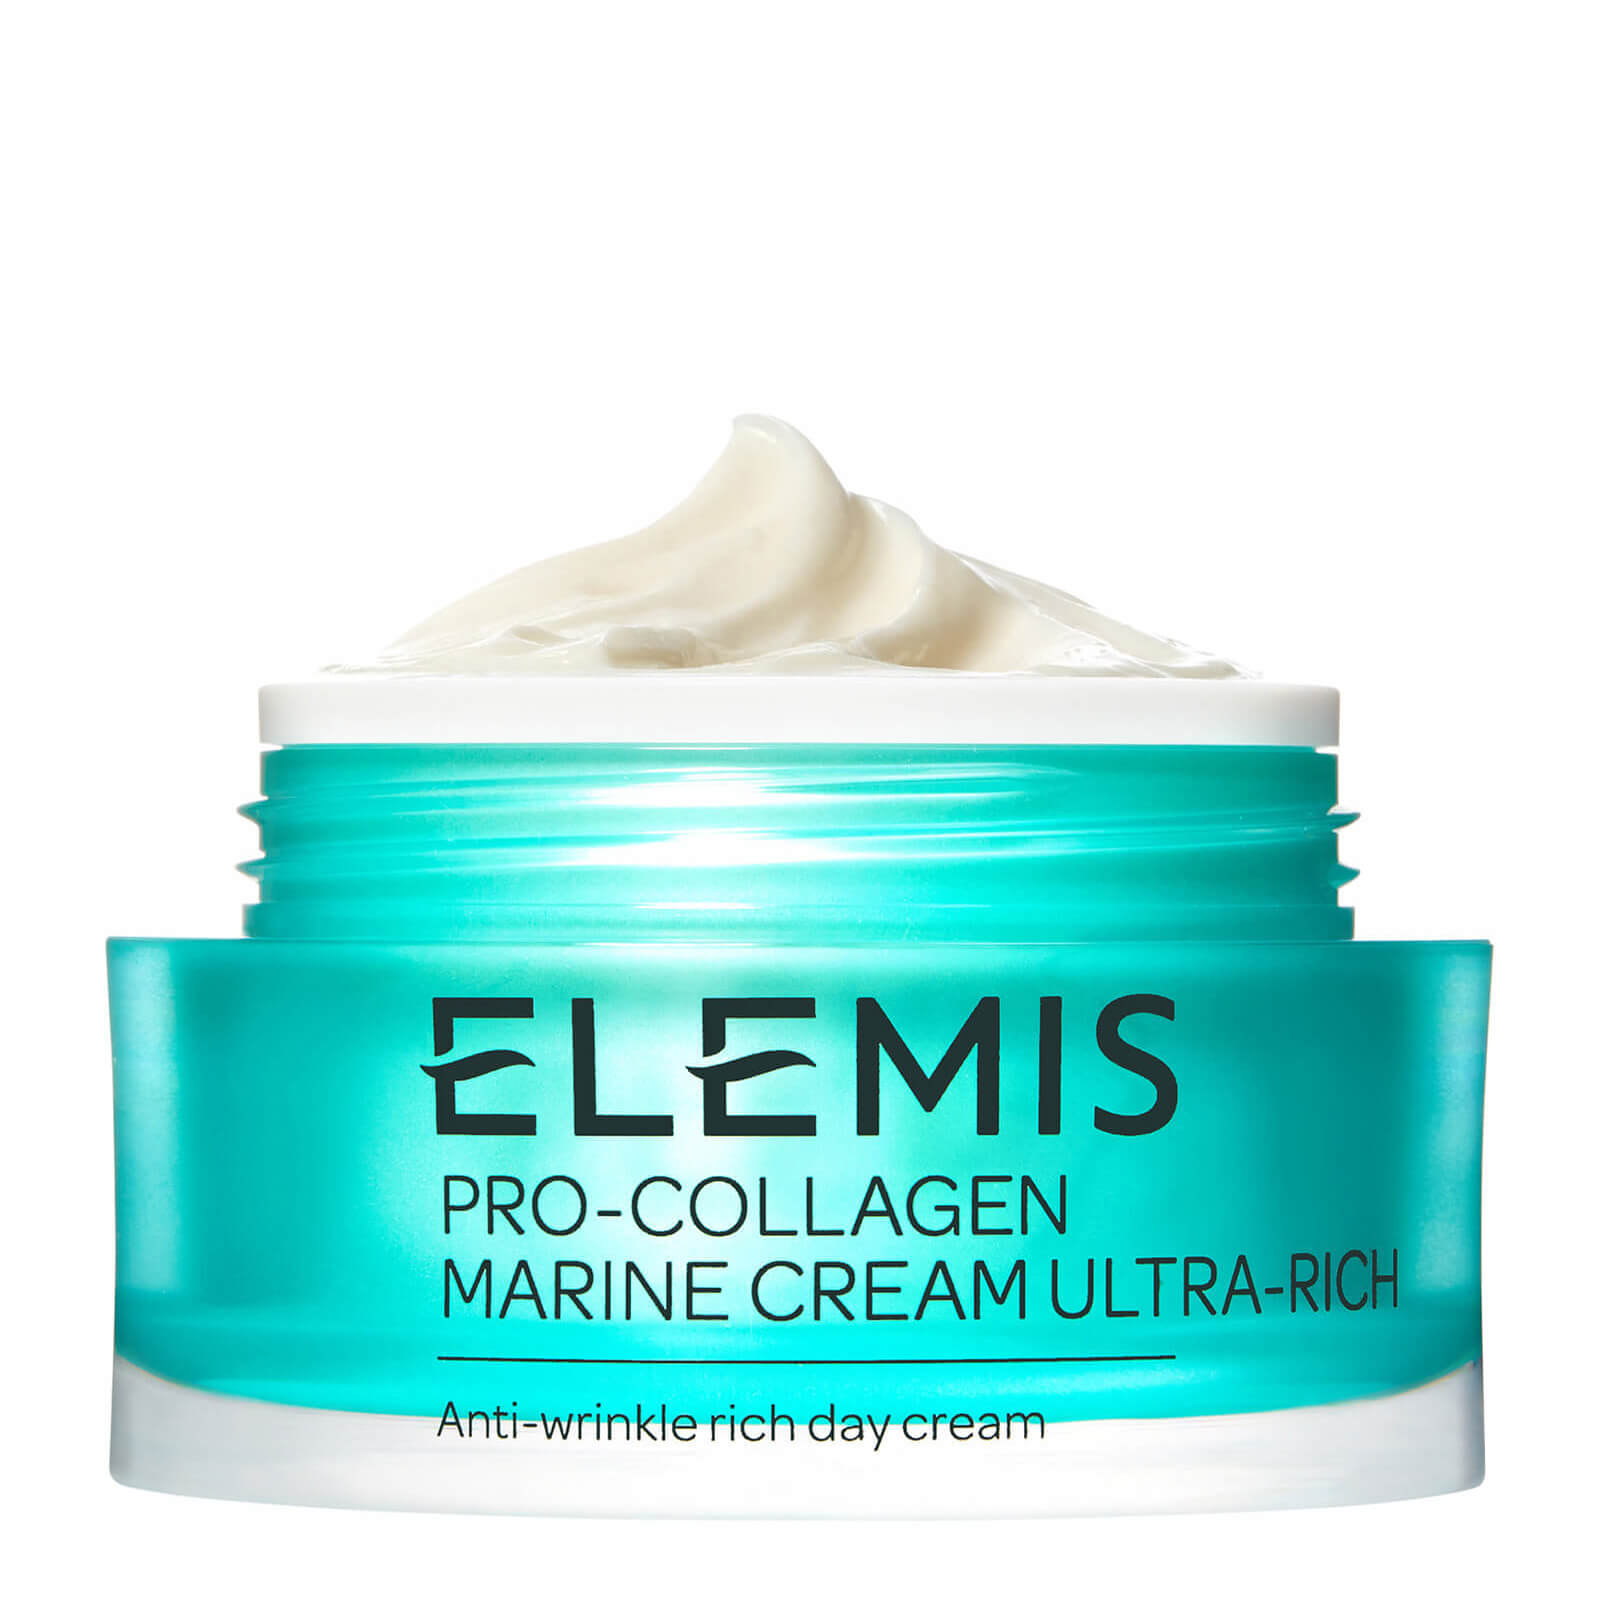 Pro-Collagen Marine Cream Ultra-Rich